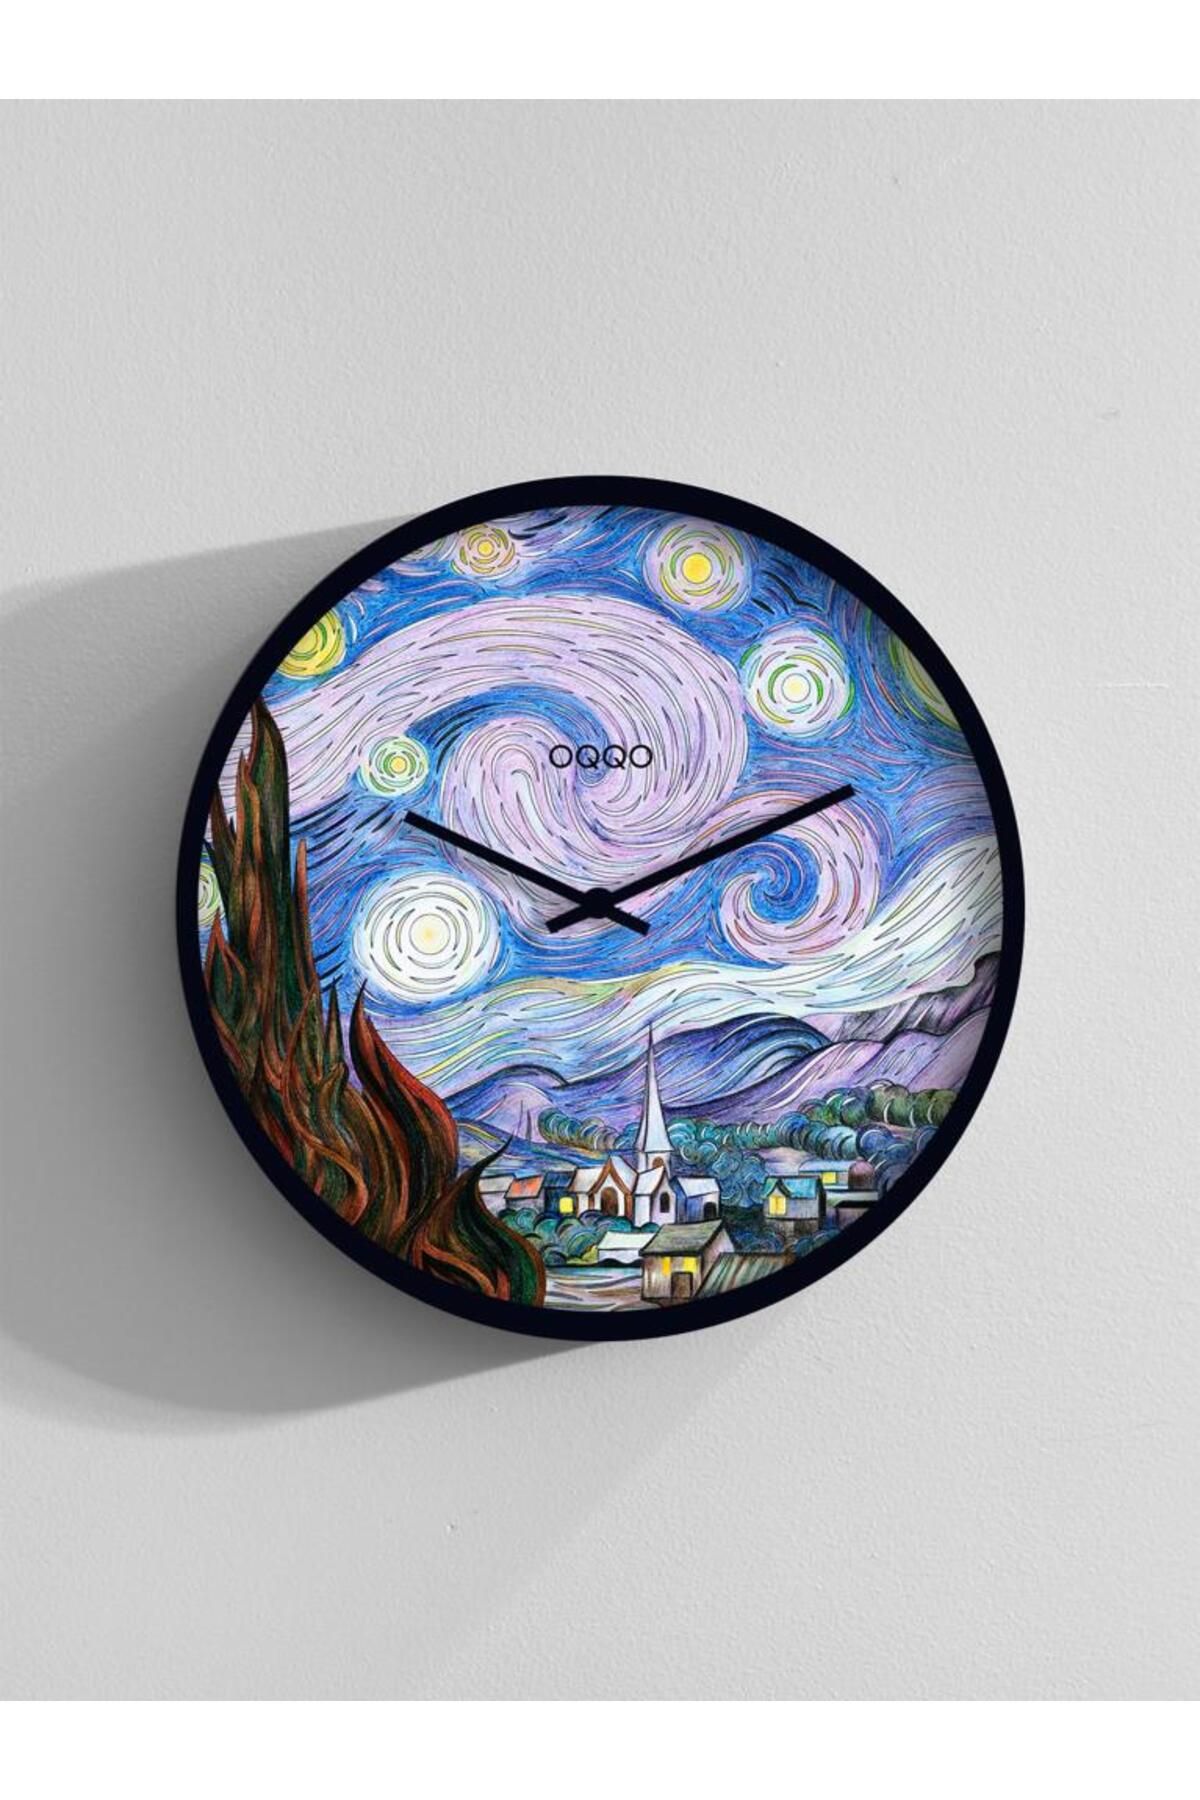 OQQO Vincent Van Gogh The Starry Night Modern El Yapımı Ahşap Duvar Saati